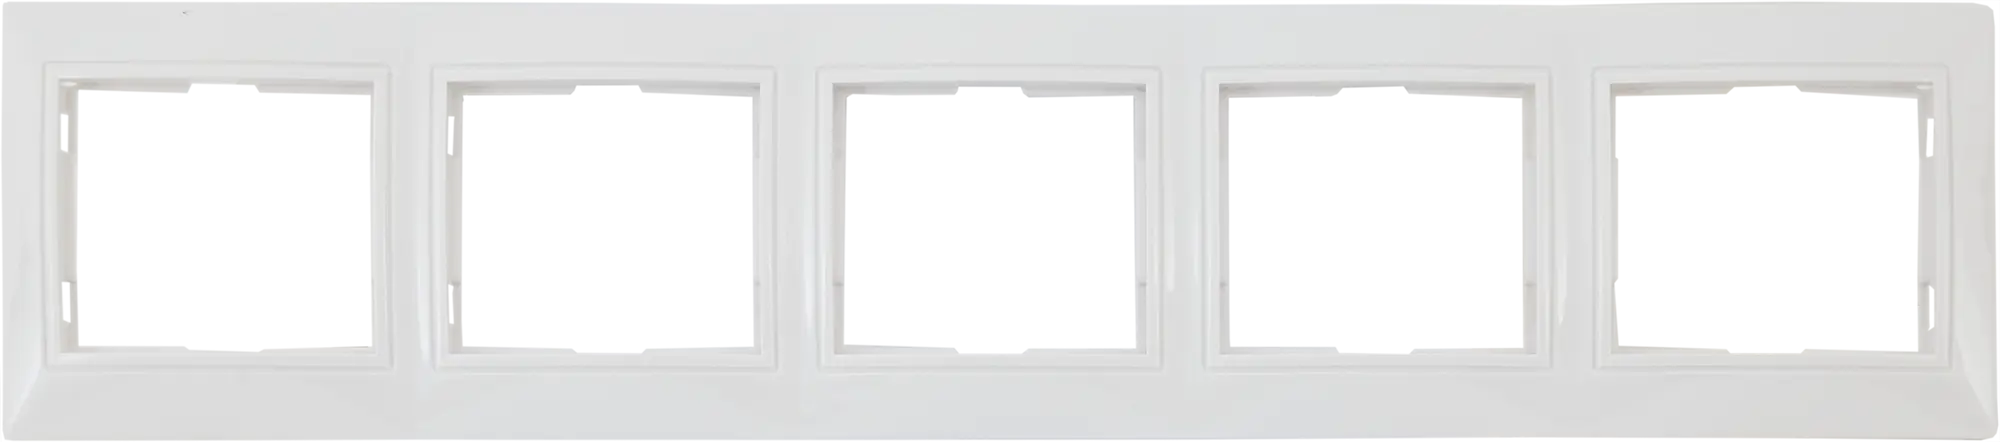 Рамка для розеток и выключателей горизонтальная Таймыр 5 постов, цвет белый горизонтальная двухместная рамка stekker